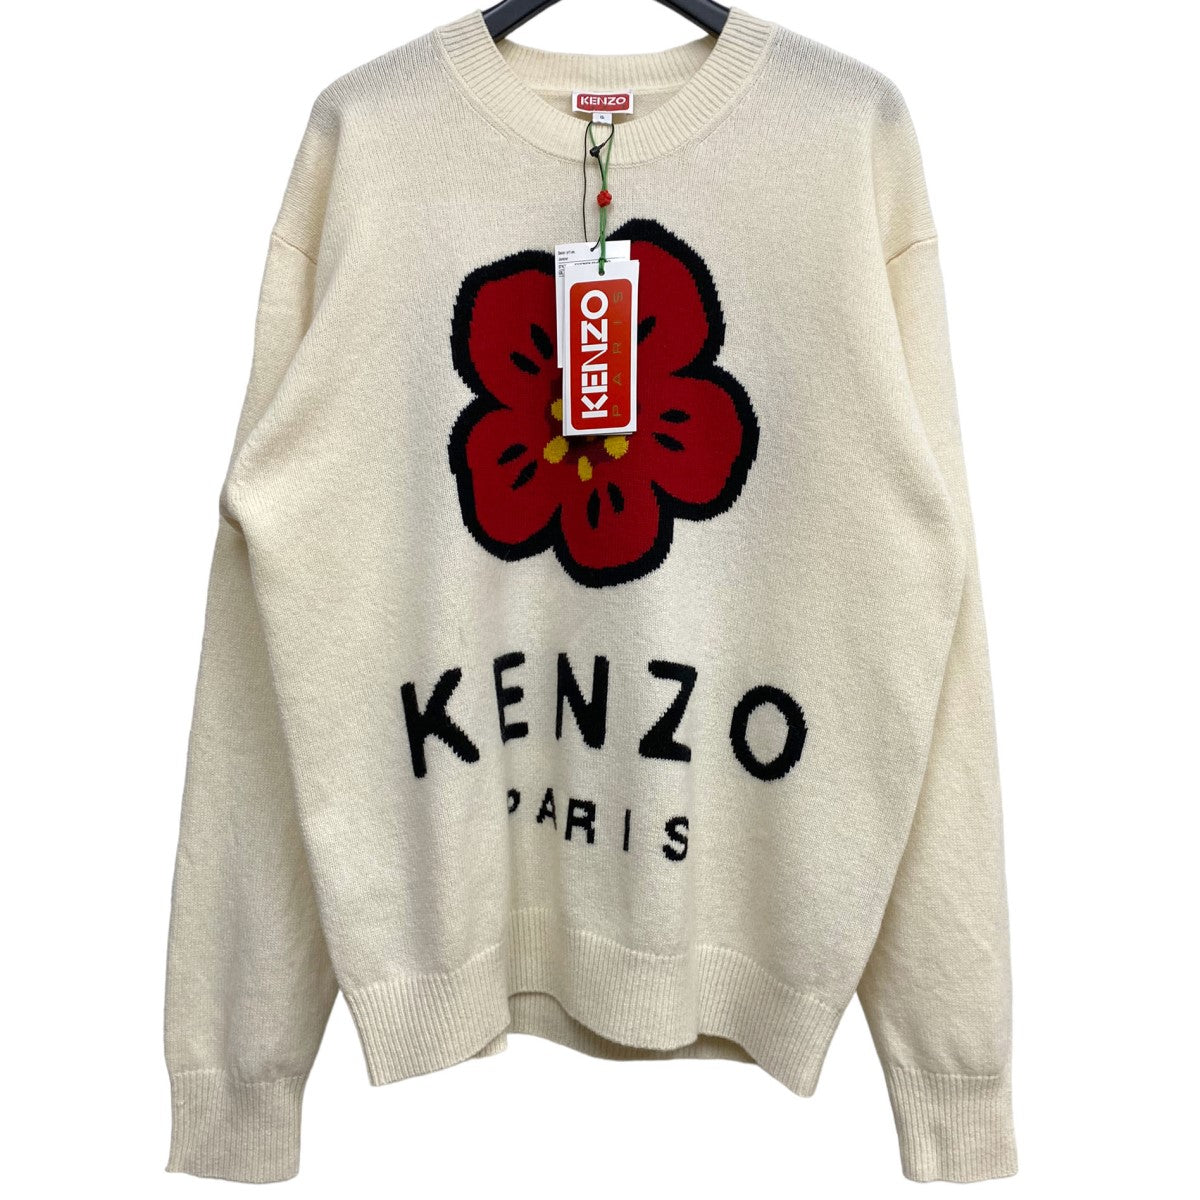 公式で購入しましたkenzo nigo セーター